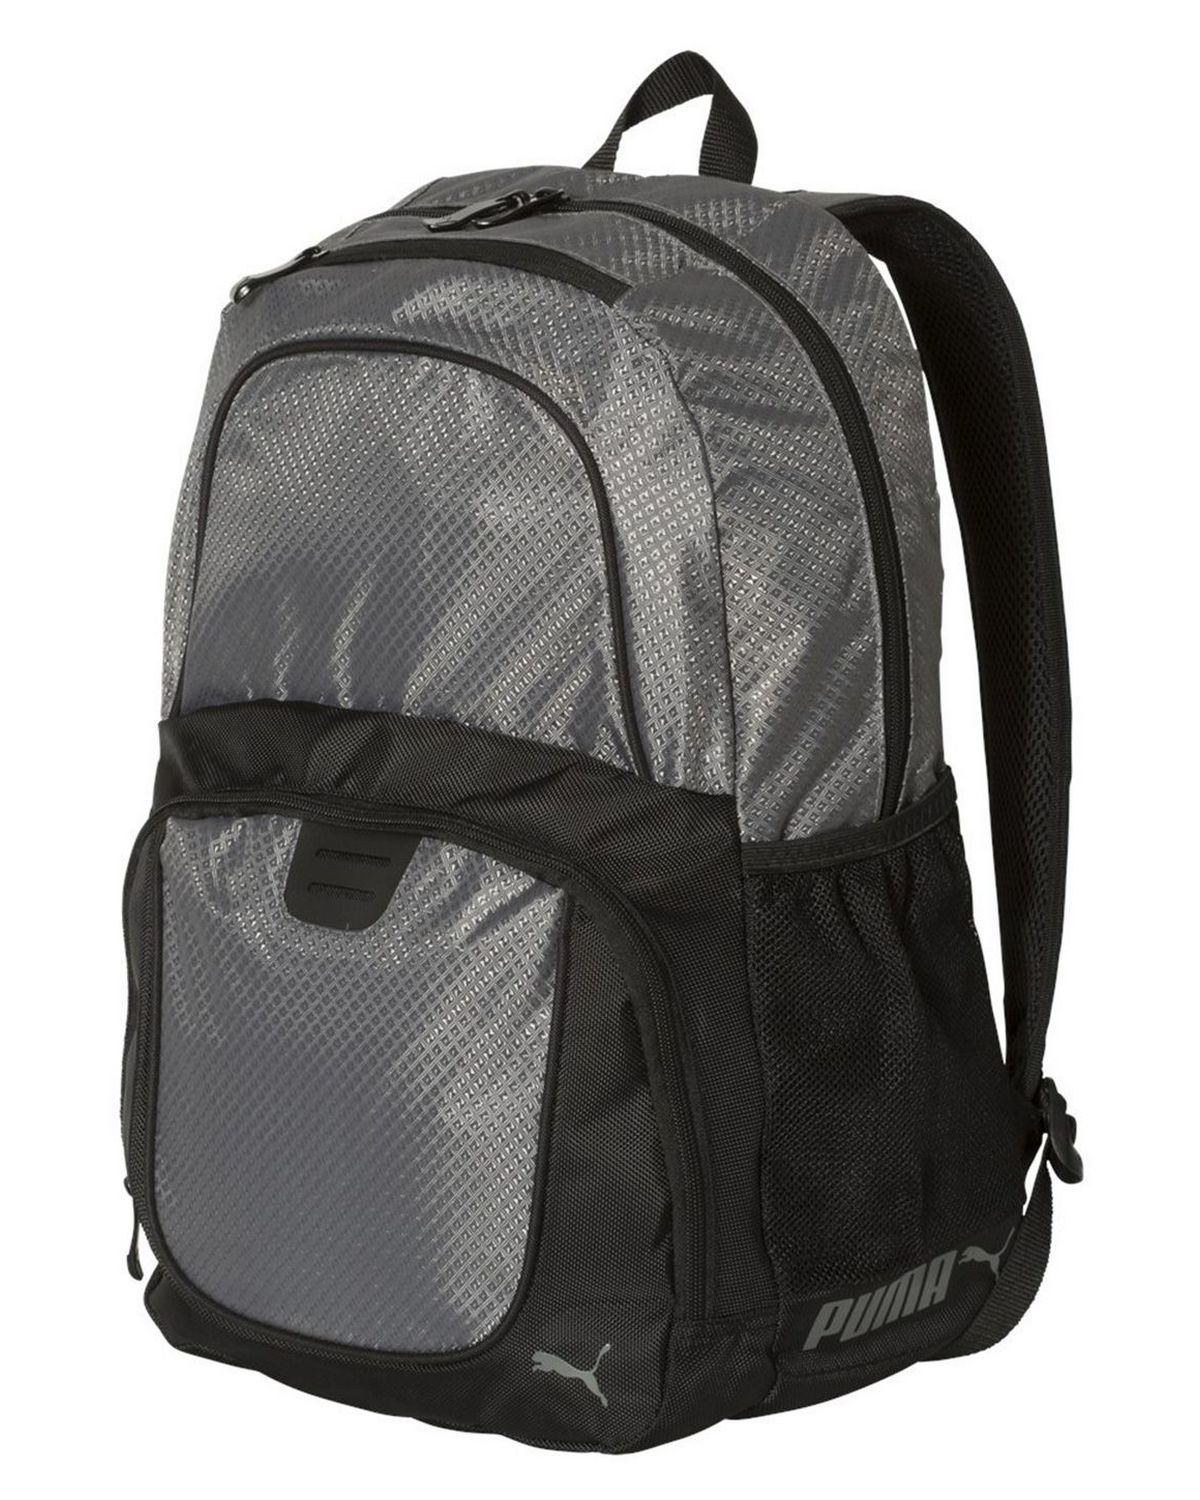 'Puma PSC1028 25L Backpack'